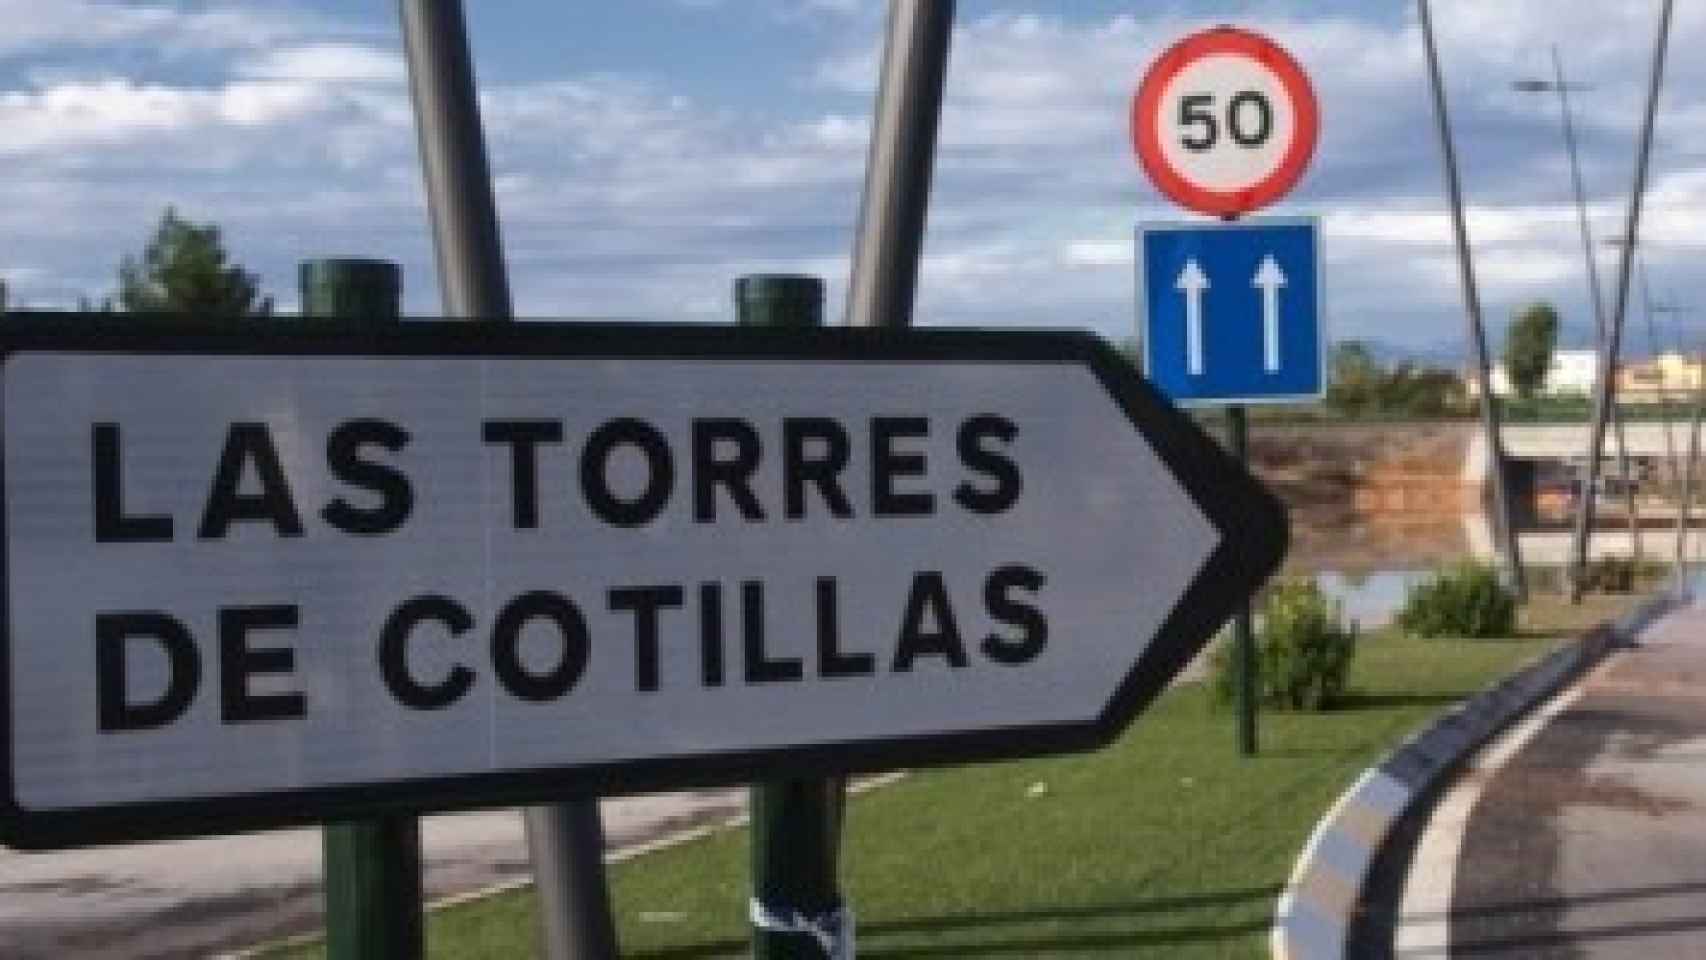 Las Torres de Cotillas, donde se ha producido el doble crimen, se encuentra a 10 kilómetros de Murcia